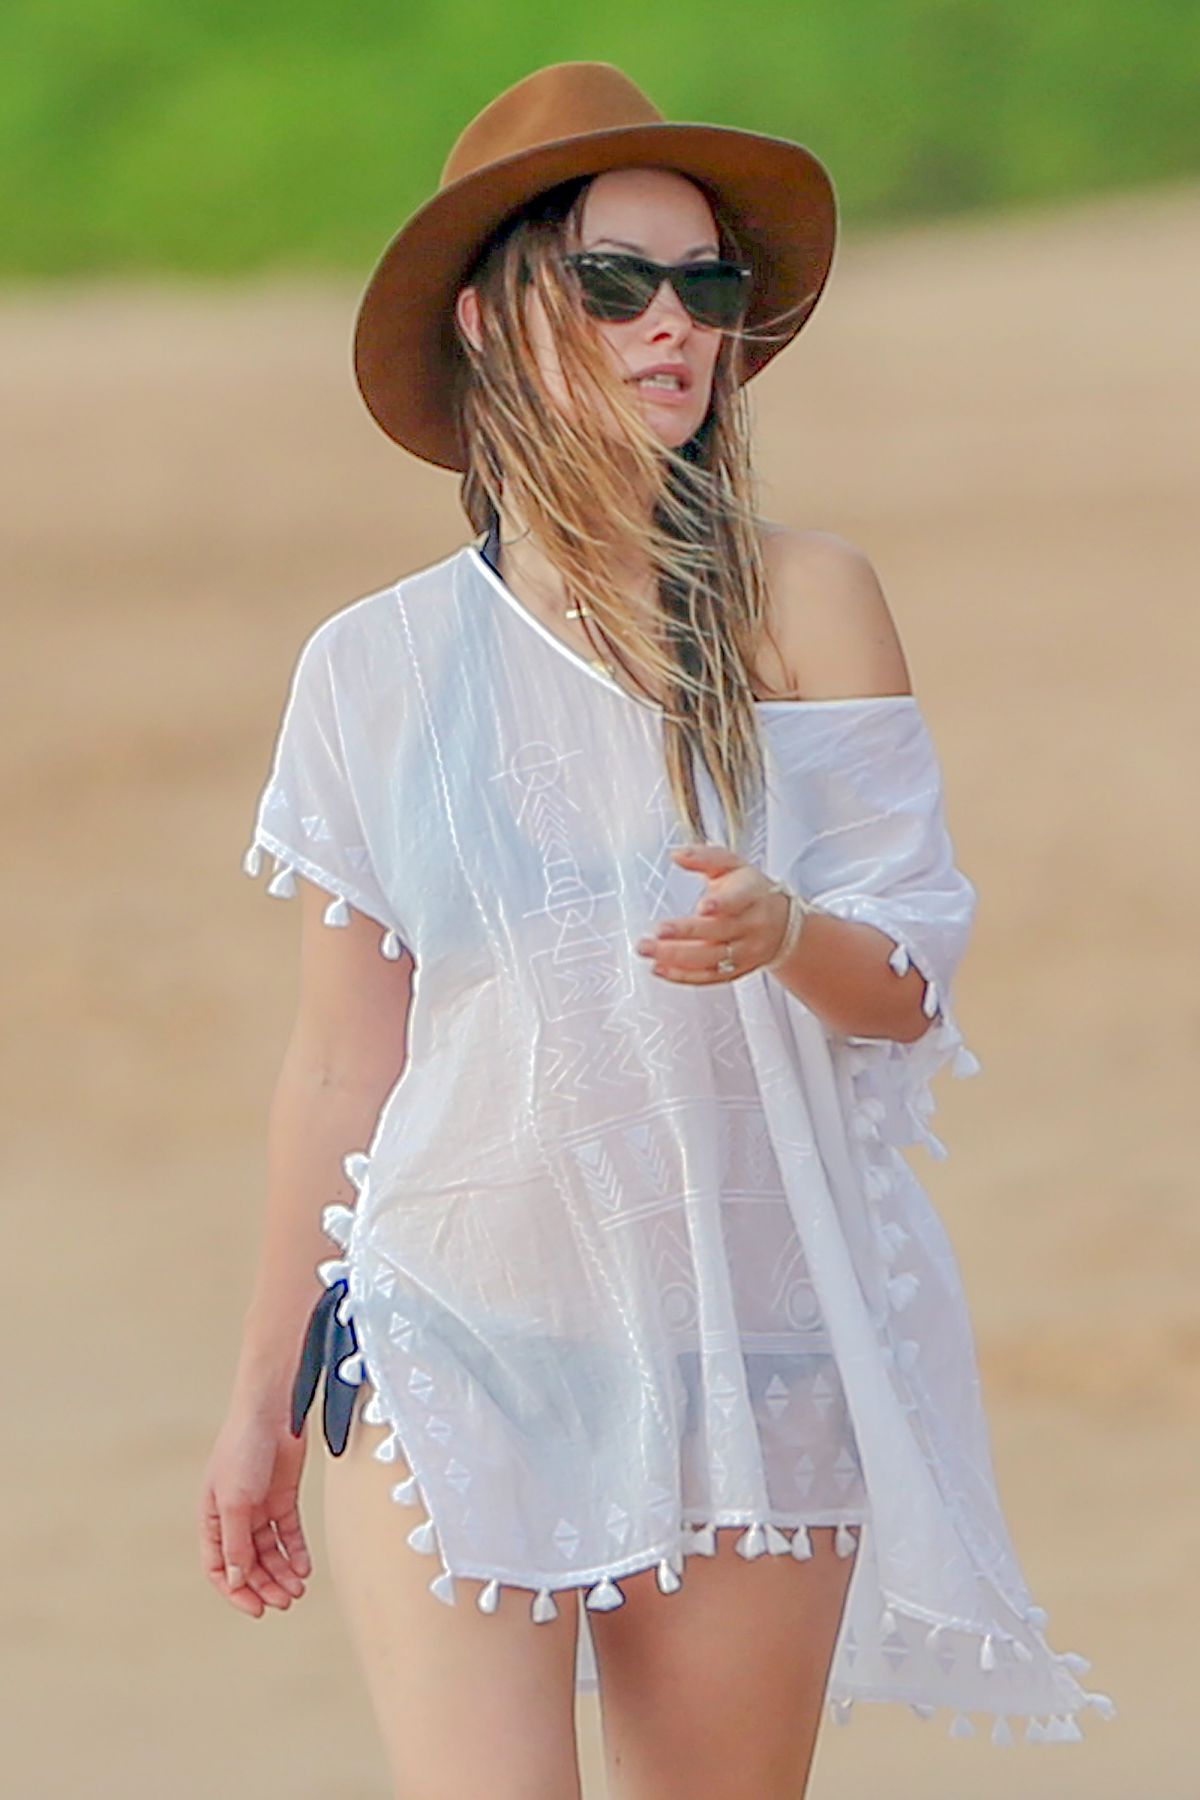 Olivia Wilde In Bikini At A Beach In Hawaii 12 12 2015 Hawtcelebs